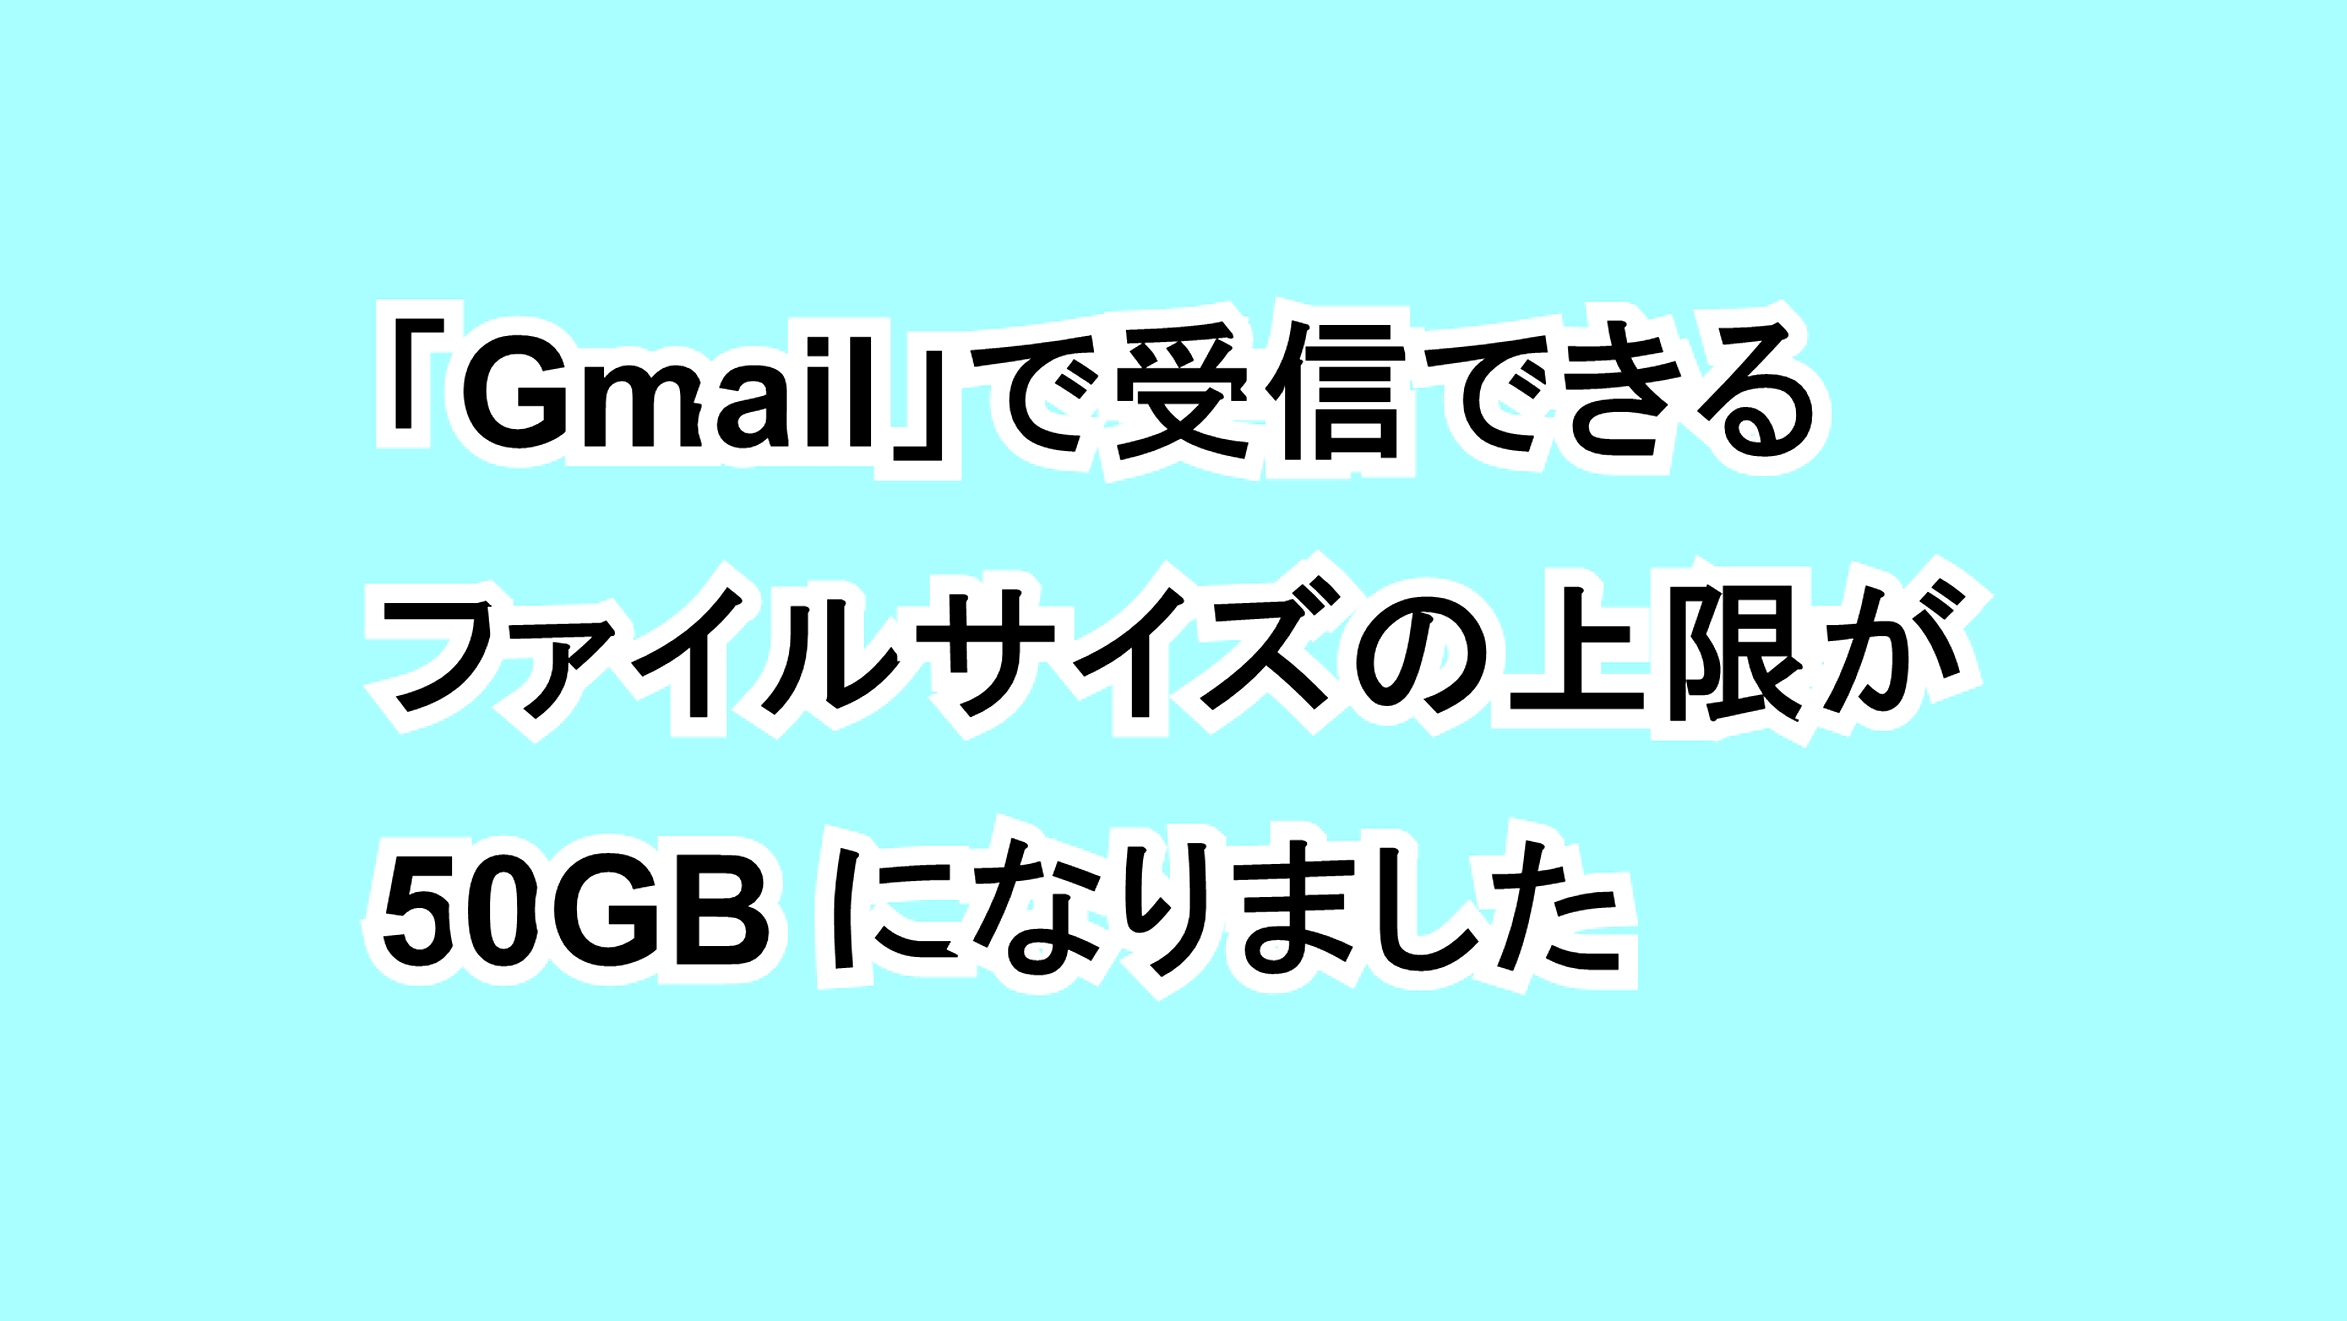 「Gmail」で受信できるファイルサイズの上限が50MBになりました